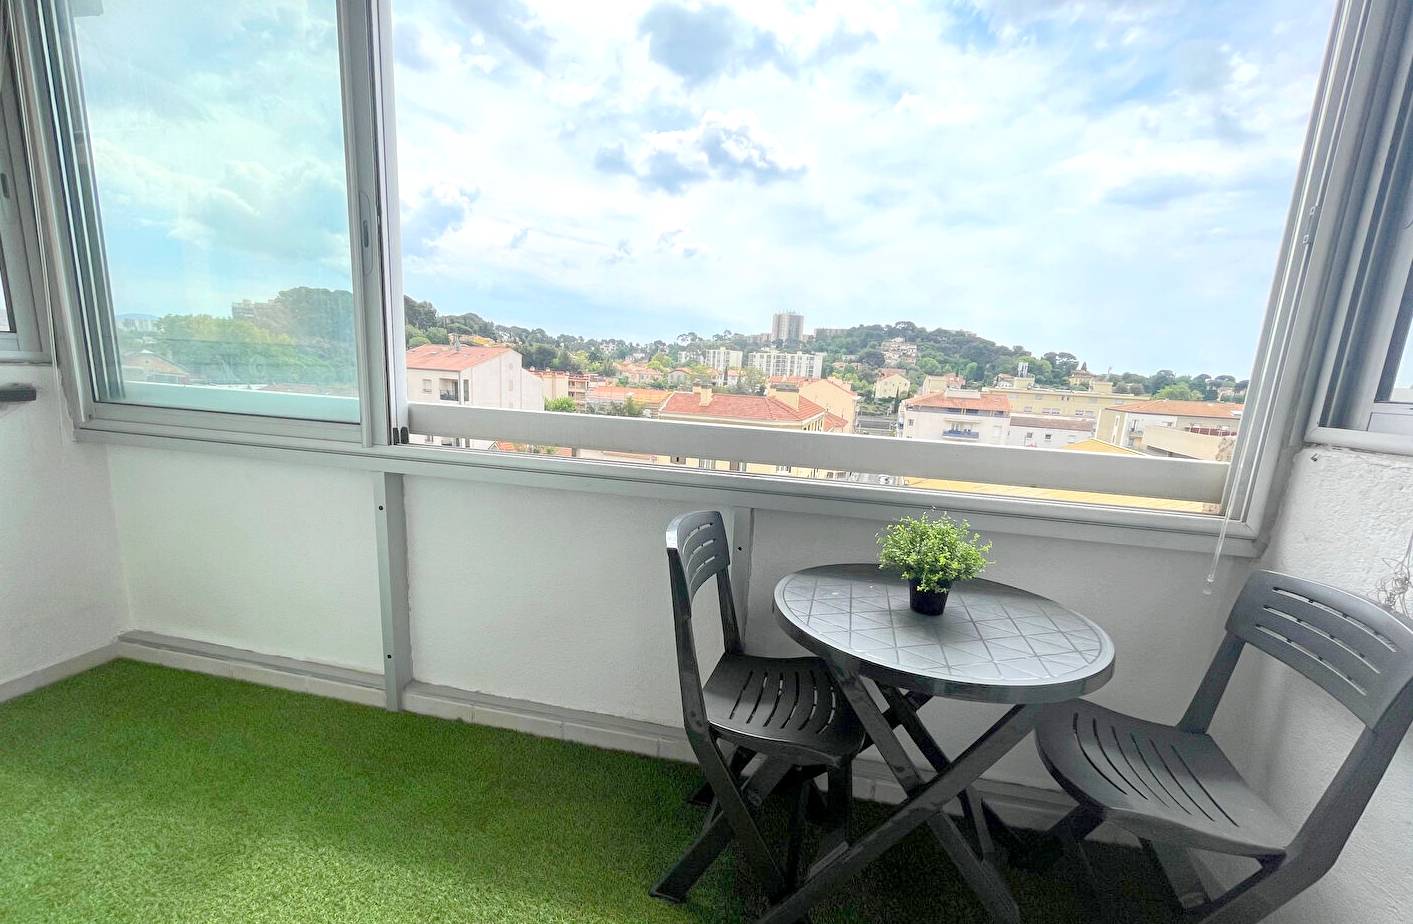 Appartement avec terrasse fermée à vendre à Saint-Jean, quartier de Toulon